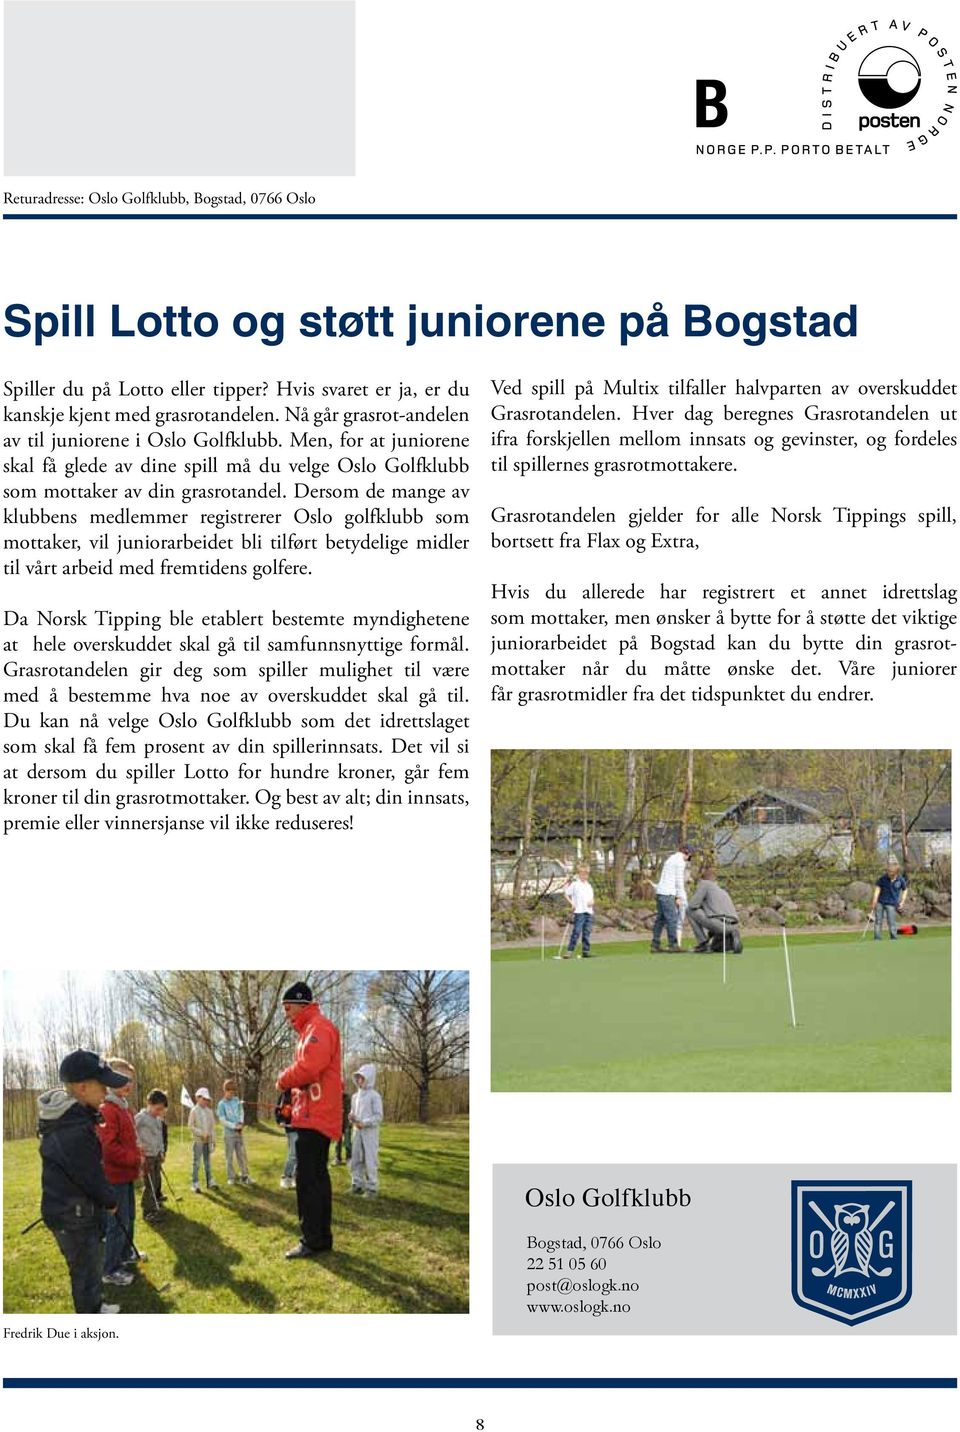 Dersom de mange av klubbens medlemmer registrerer Oslo golfklubb som mottaker, vil juniorarbeidet bli tilført betydelige midler til vårt arbeid med fremtidens golfere.